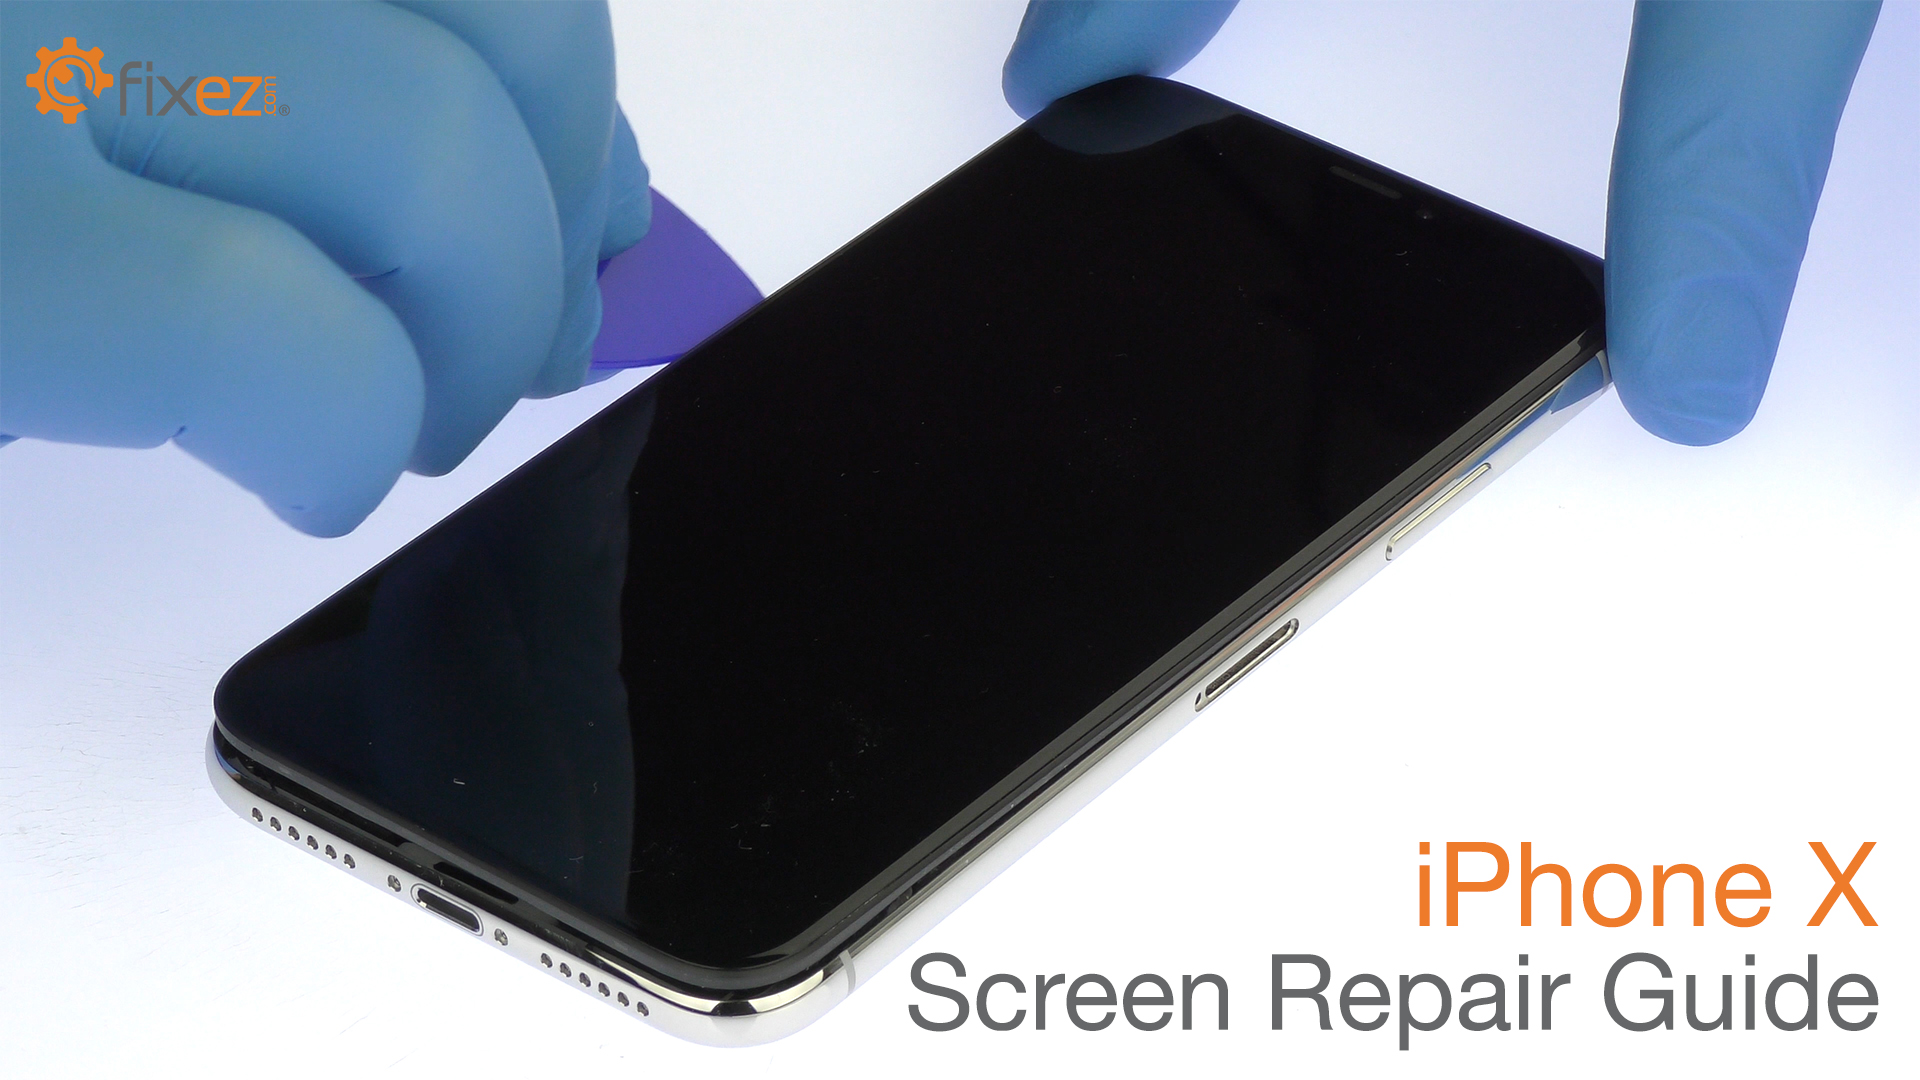 iPhone X Screen Repair Guide